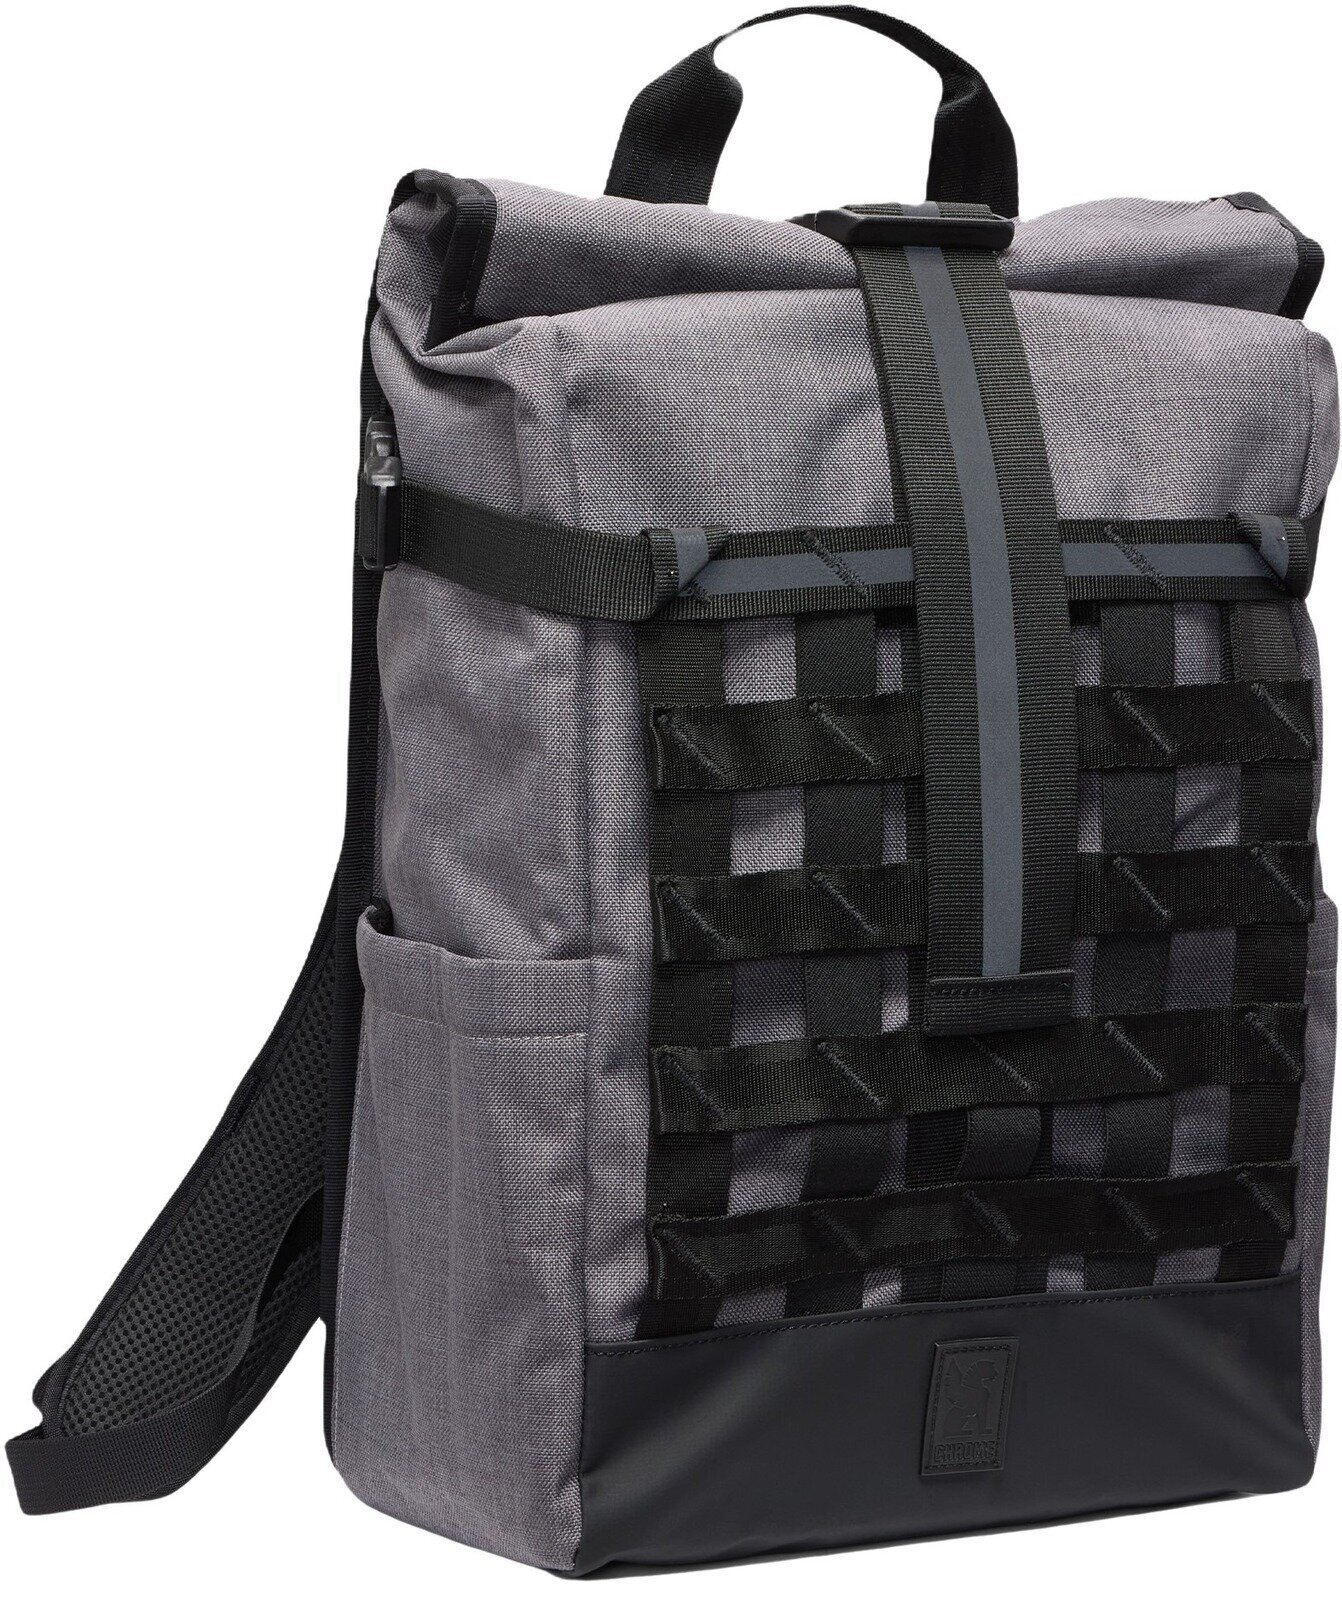 Lifestyle Backpack / Bag Chrome Barrage Backpack Castlerock Twill 18 L Backpack